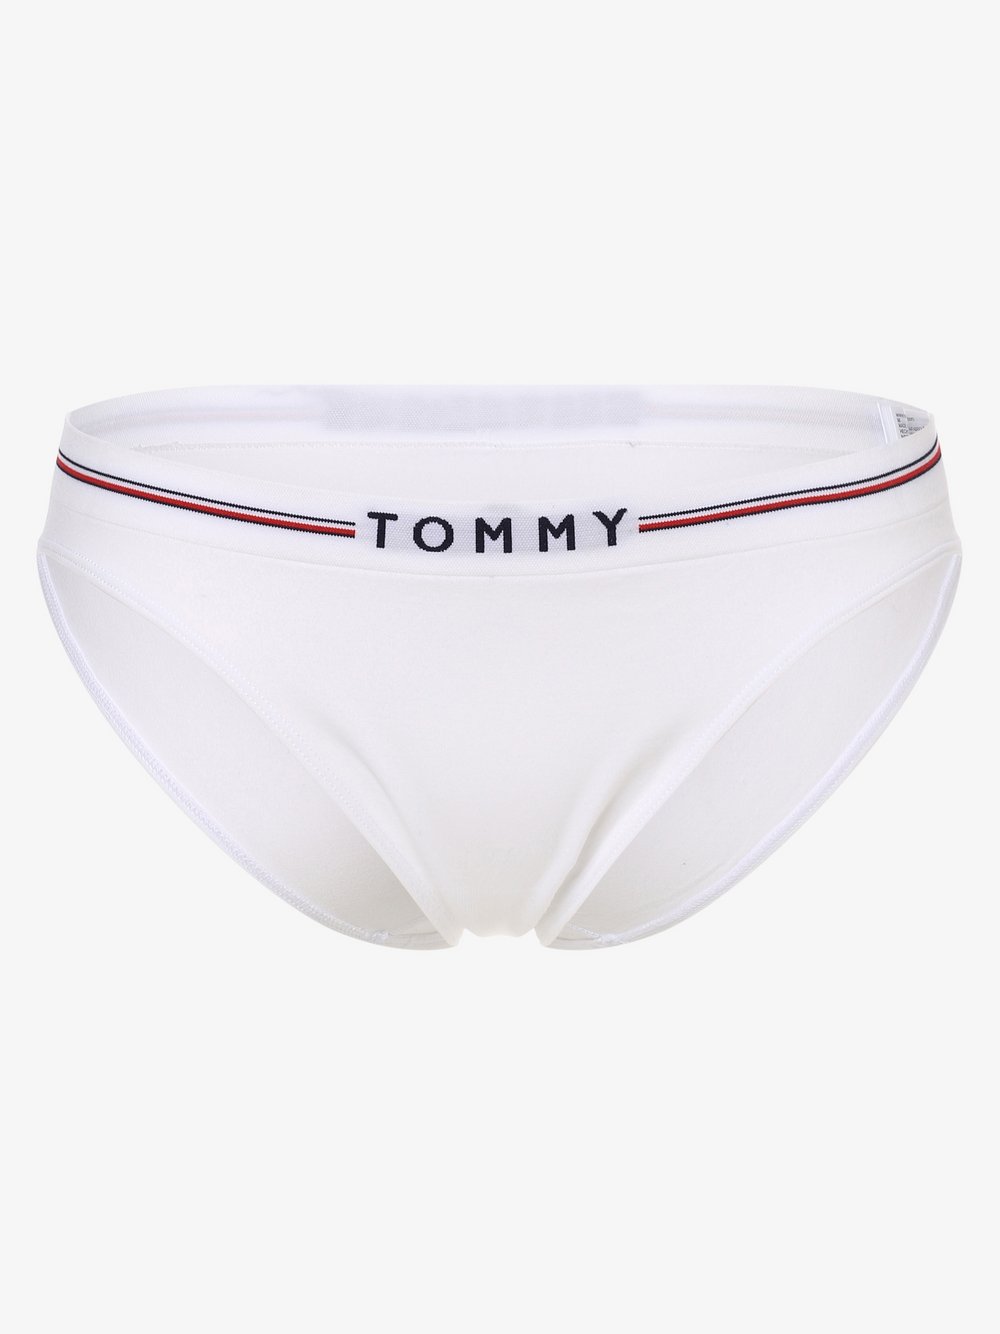 Tommy Hilfiger - Slipy damskie, biały